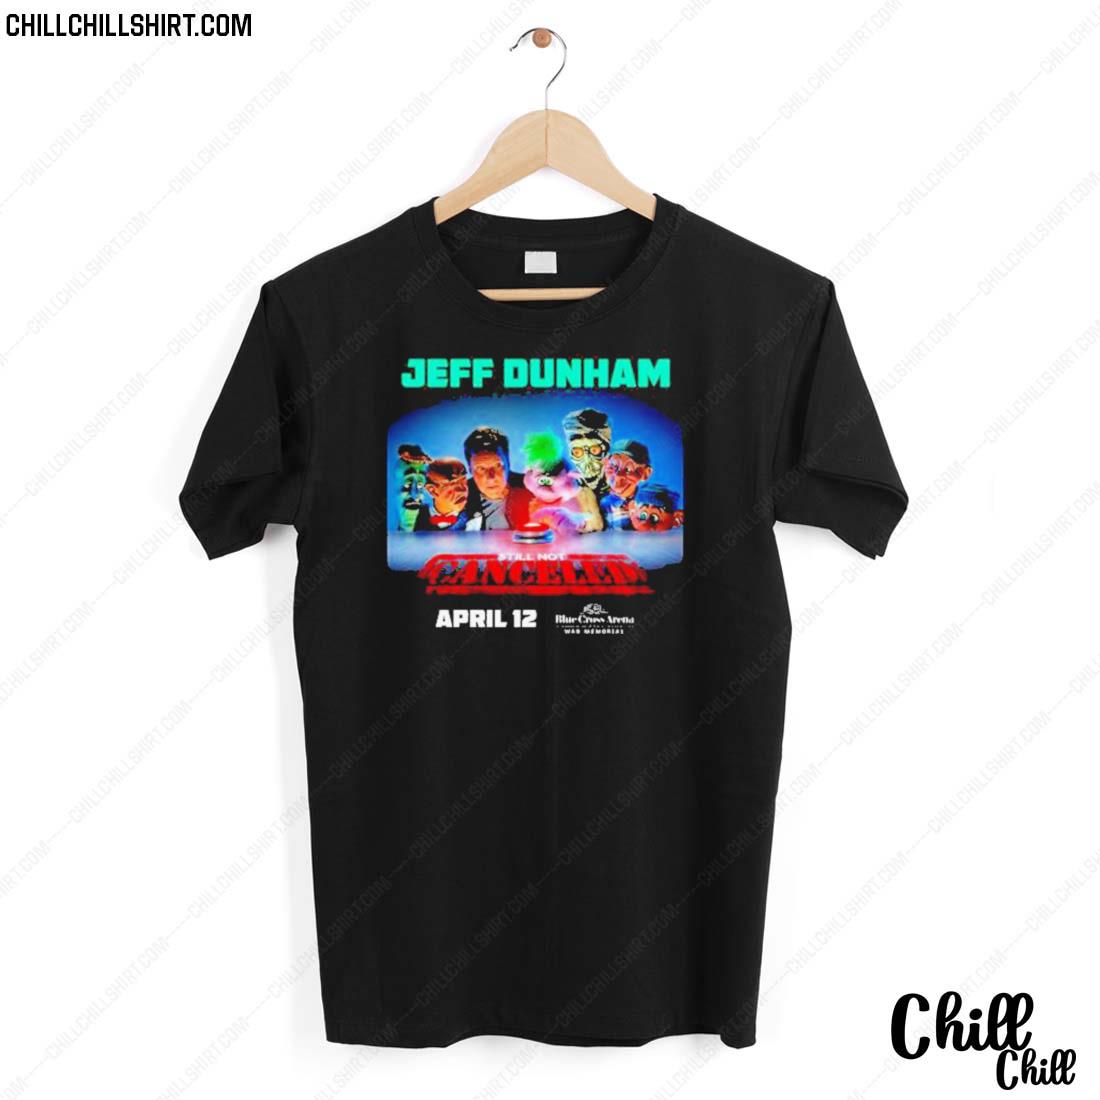 Nice still Not Cancerled Jeff Dunham T-shirt